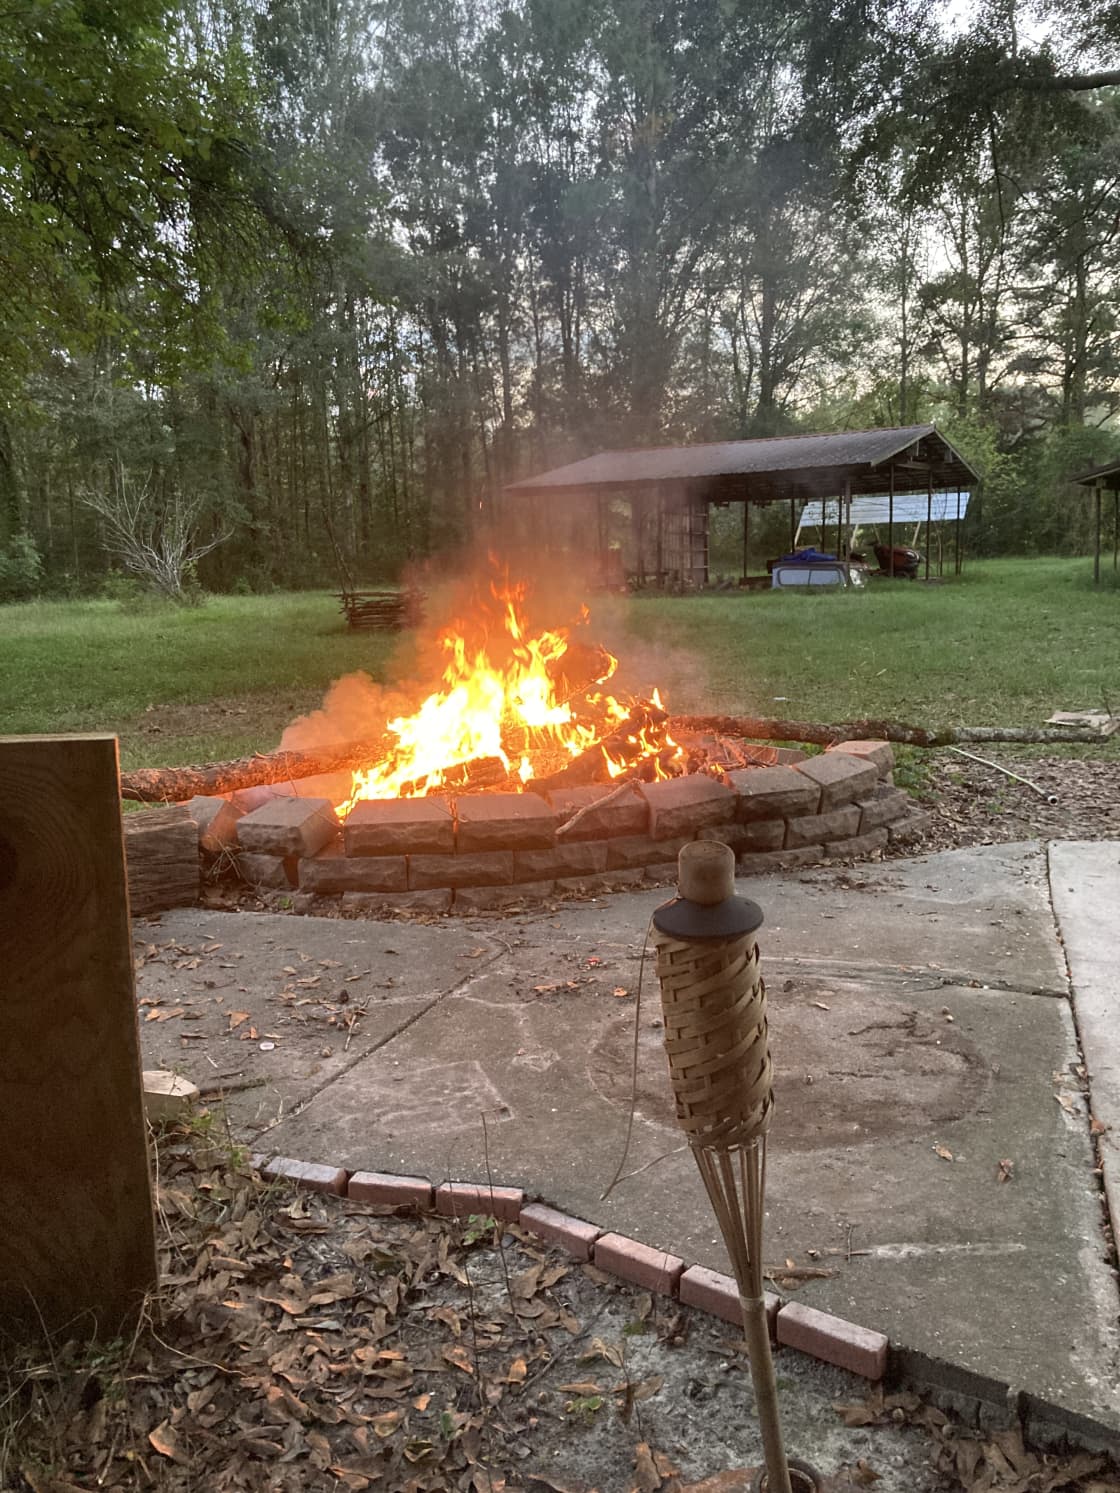 Campfire we had!